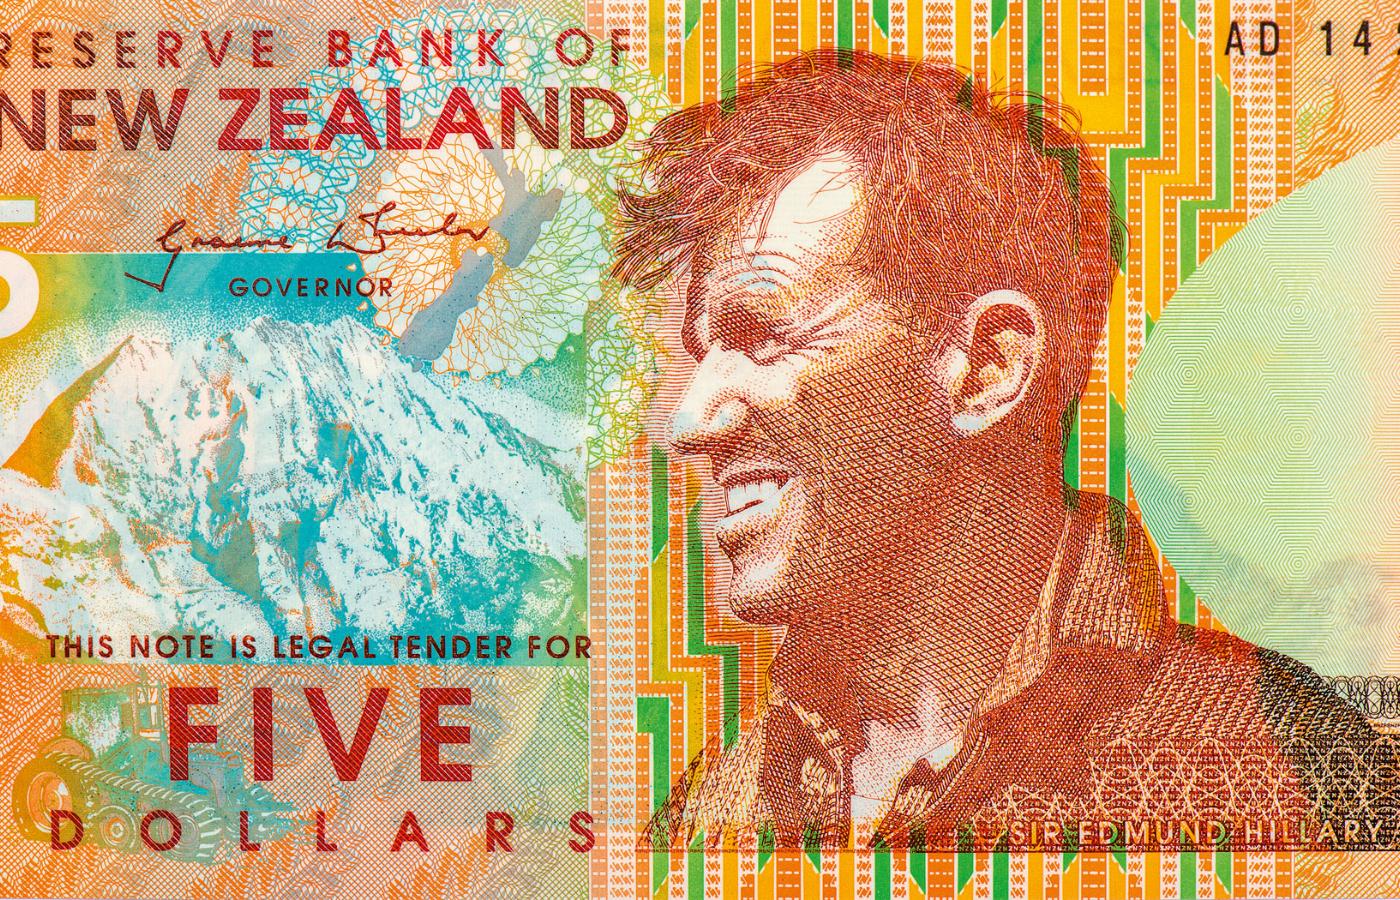 Podobizna Edmunda Hillary’ego, nie tylko himalaisty, ale i polarnika, na nowozelandzkim banknocie 5-dolarowym, 2014 r.